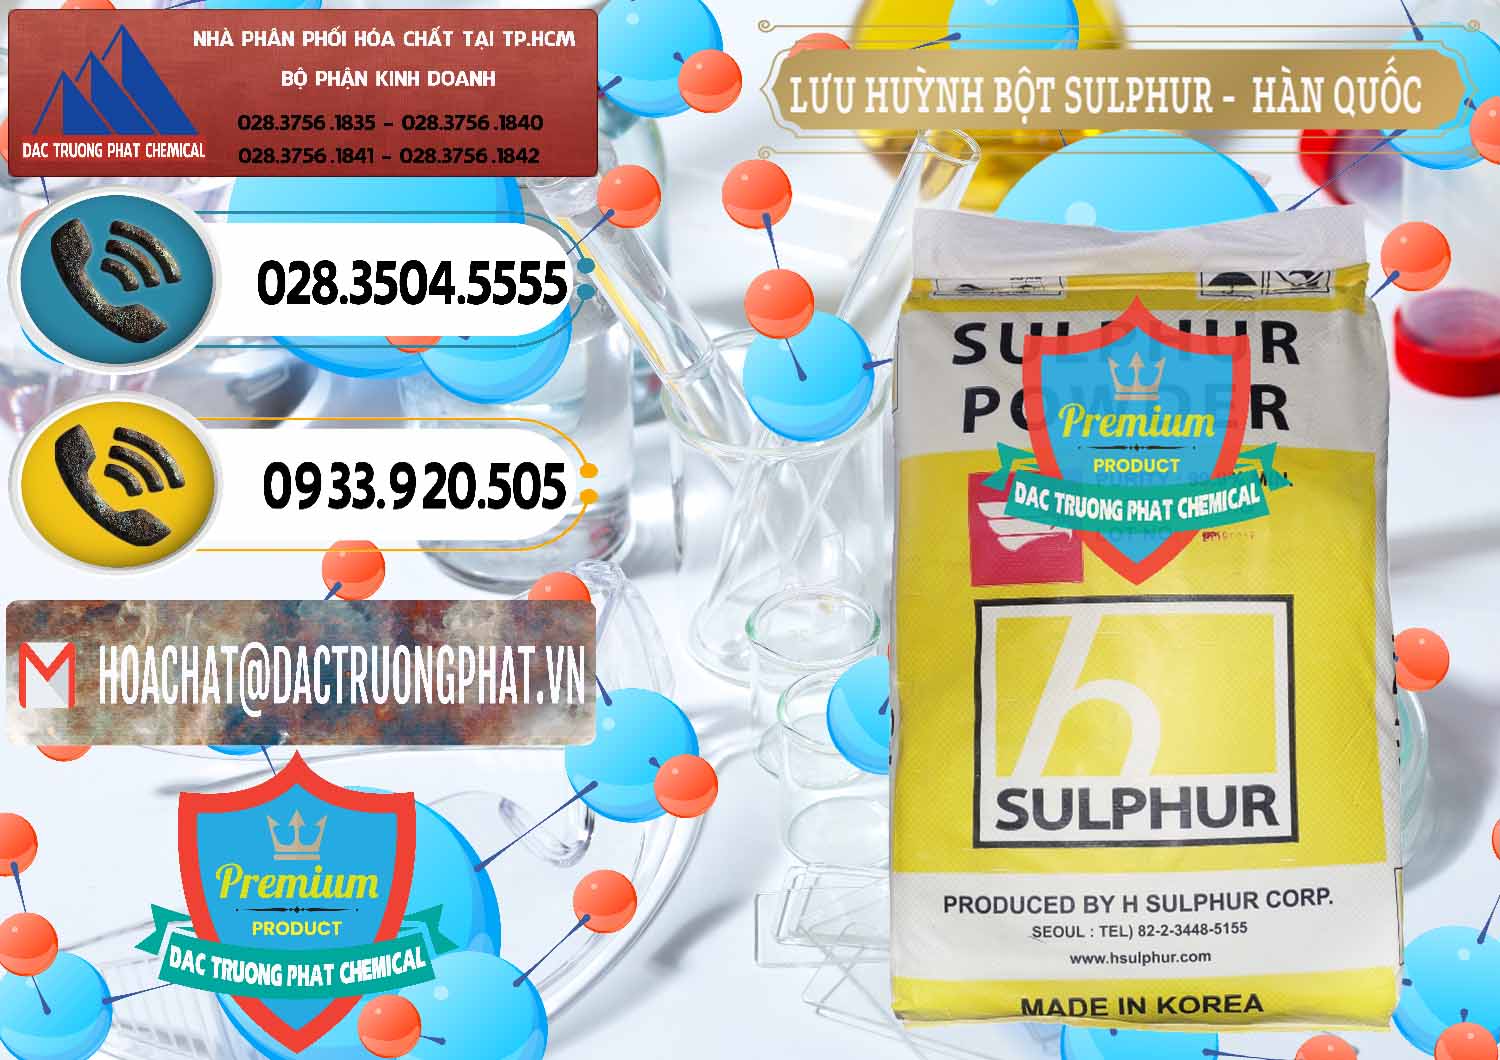 Cty chuyên bán - phân phối Lưu huỳnh Bột - Sulfur Powder ( H Sulfur ) Hàn Quốc Korea - 0199 - Nhà phân phối và cung ứng hóa chất tại TP.HCM - hoachatdetnhuom.vn